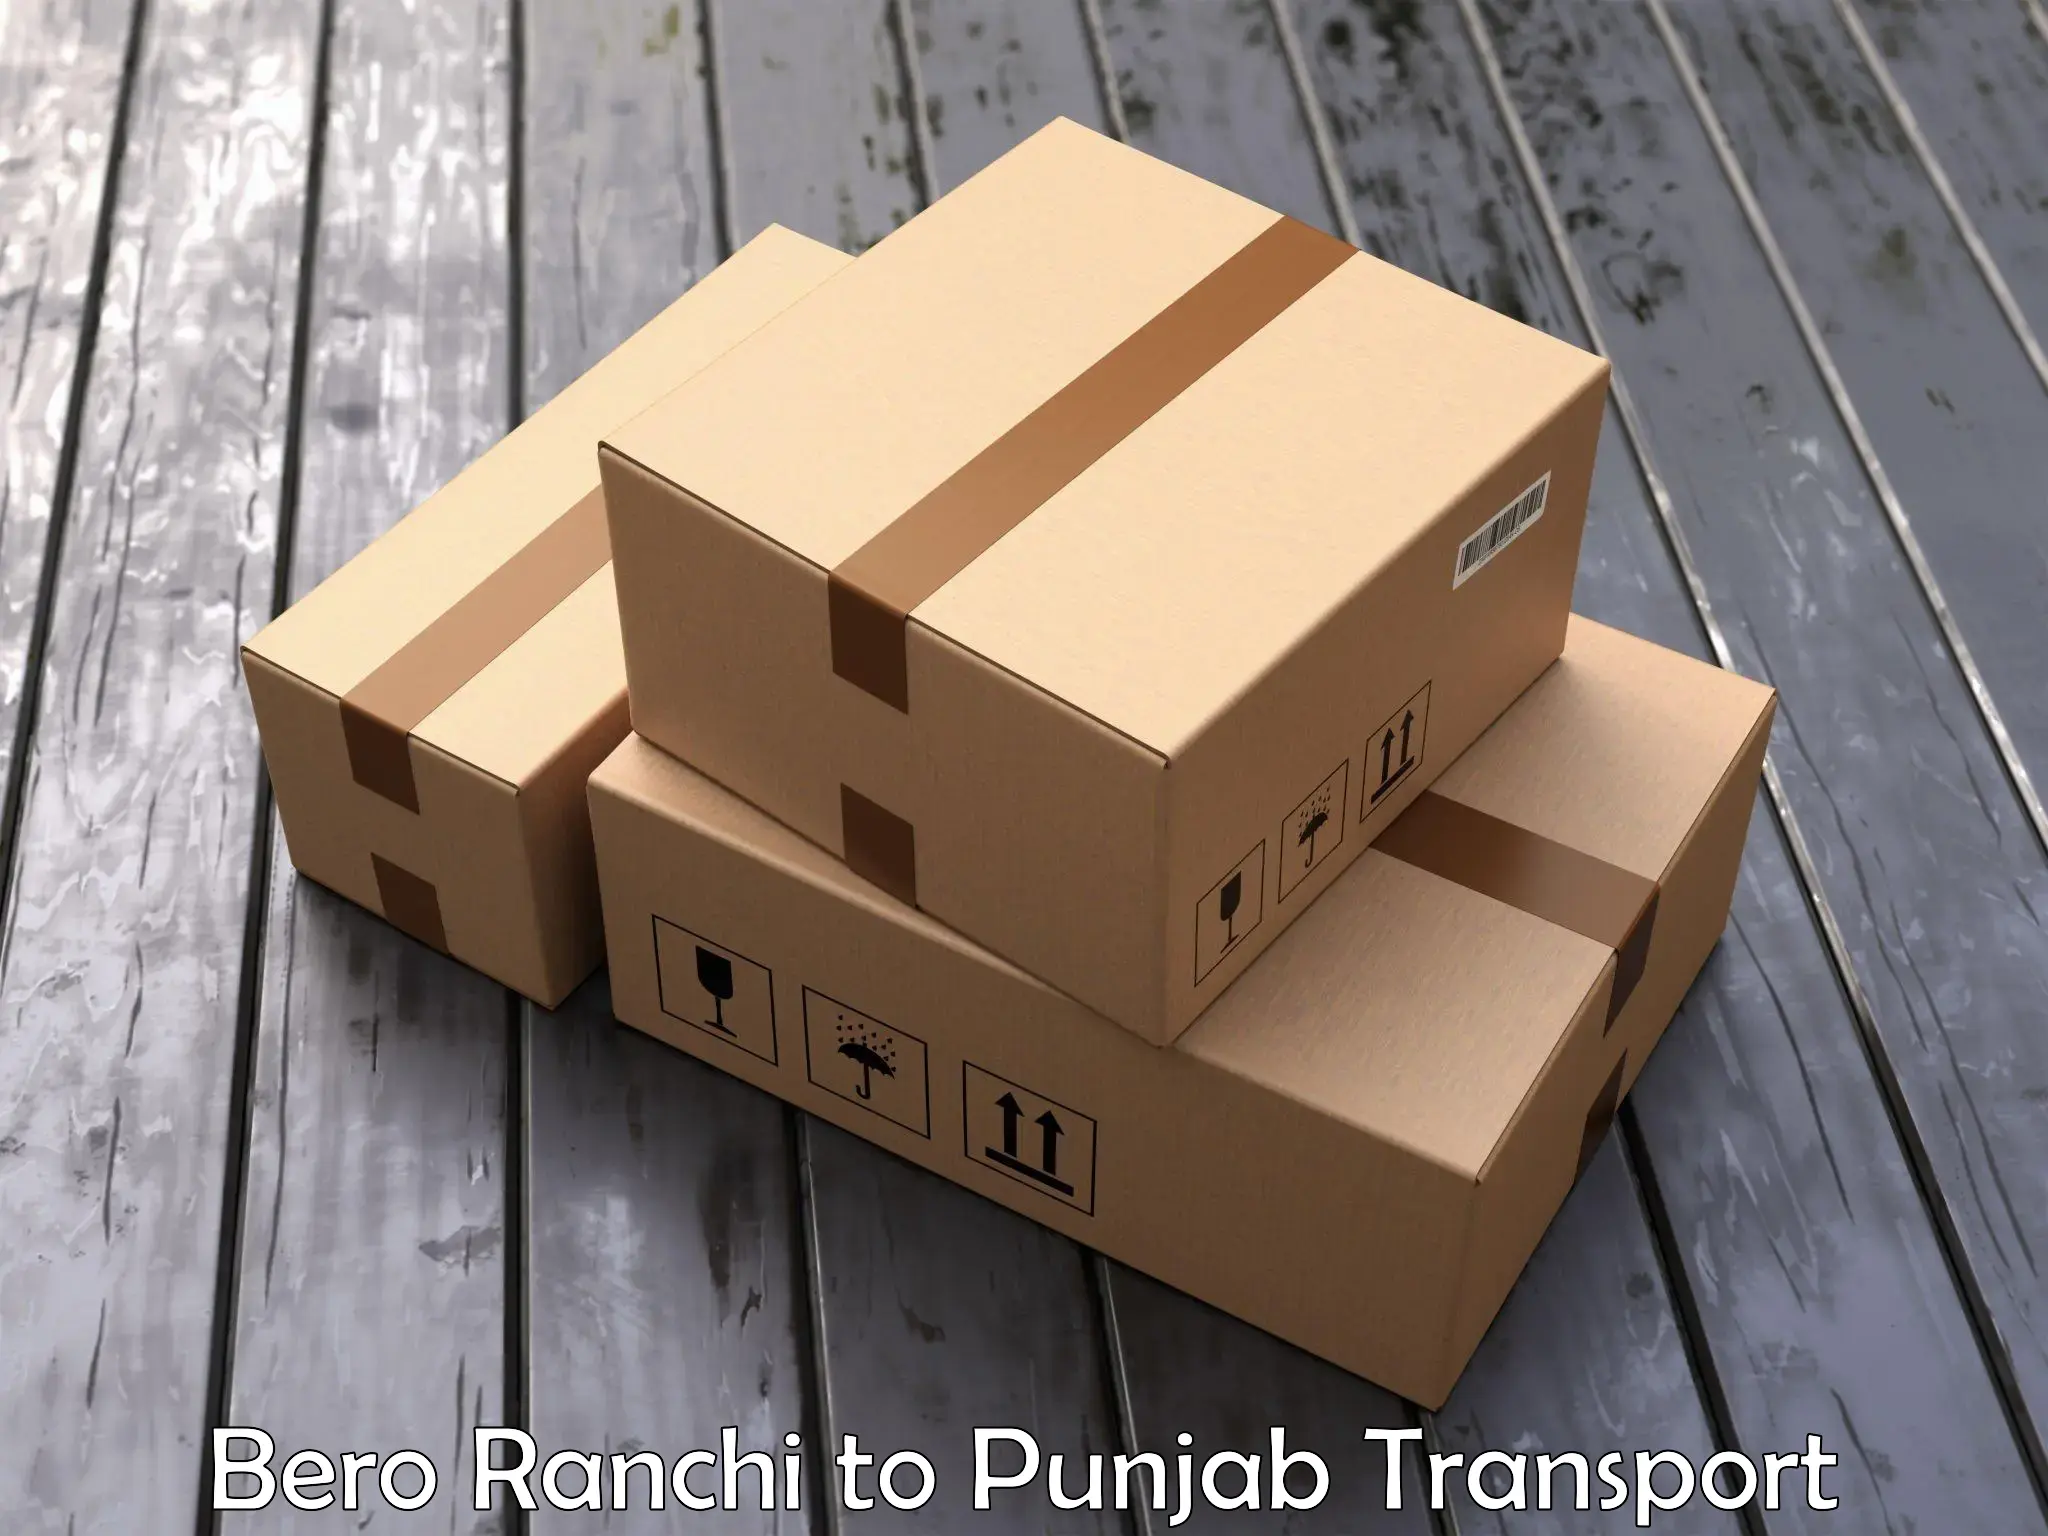 Road transport online services Bero Ranchi to Fazilka